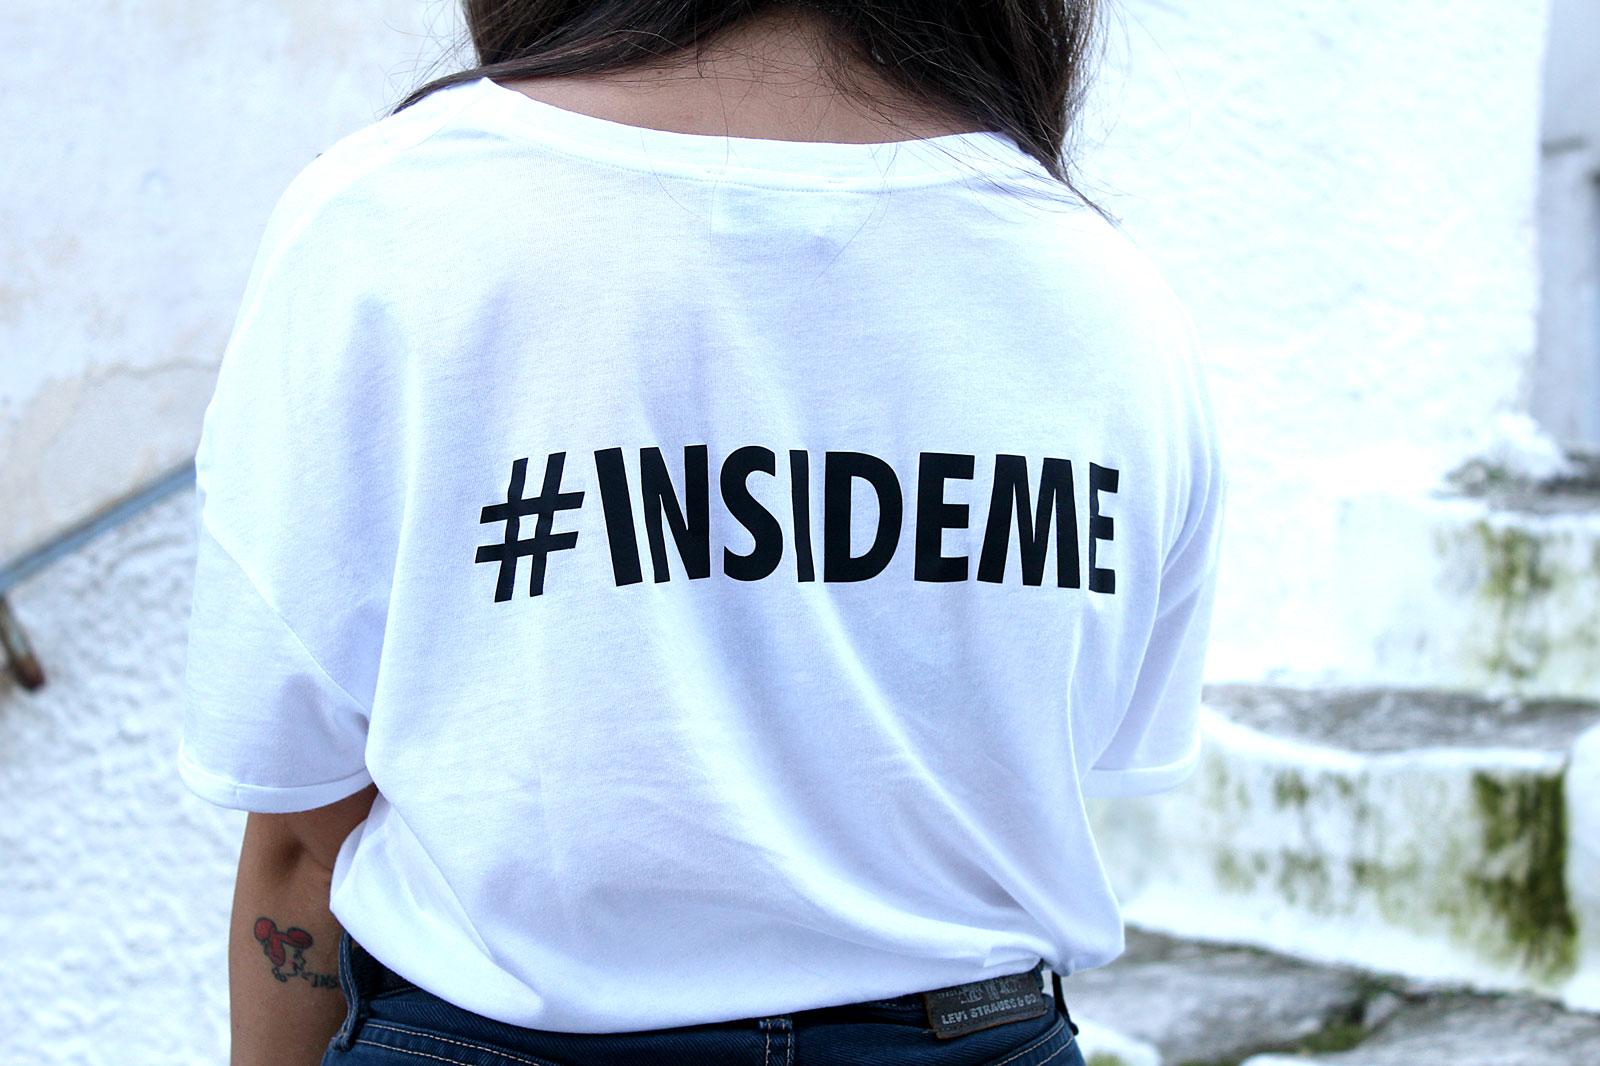 inside me